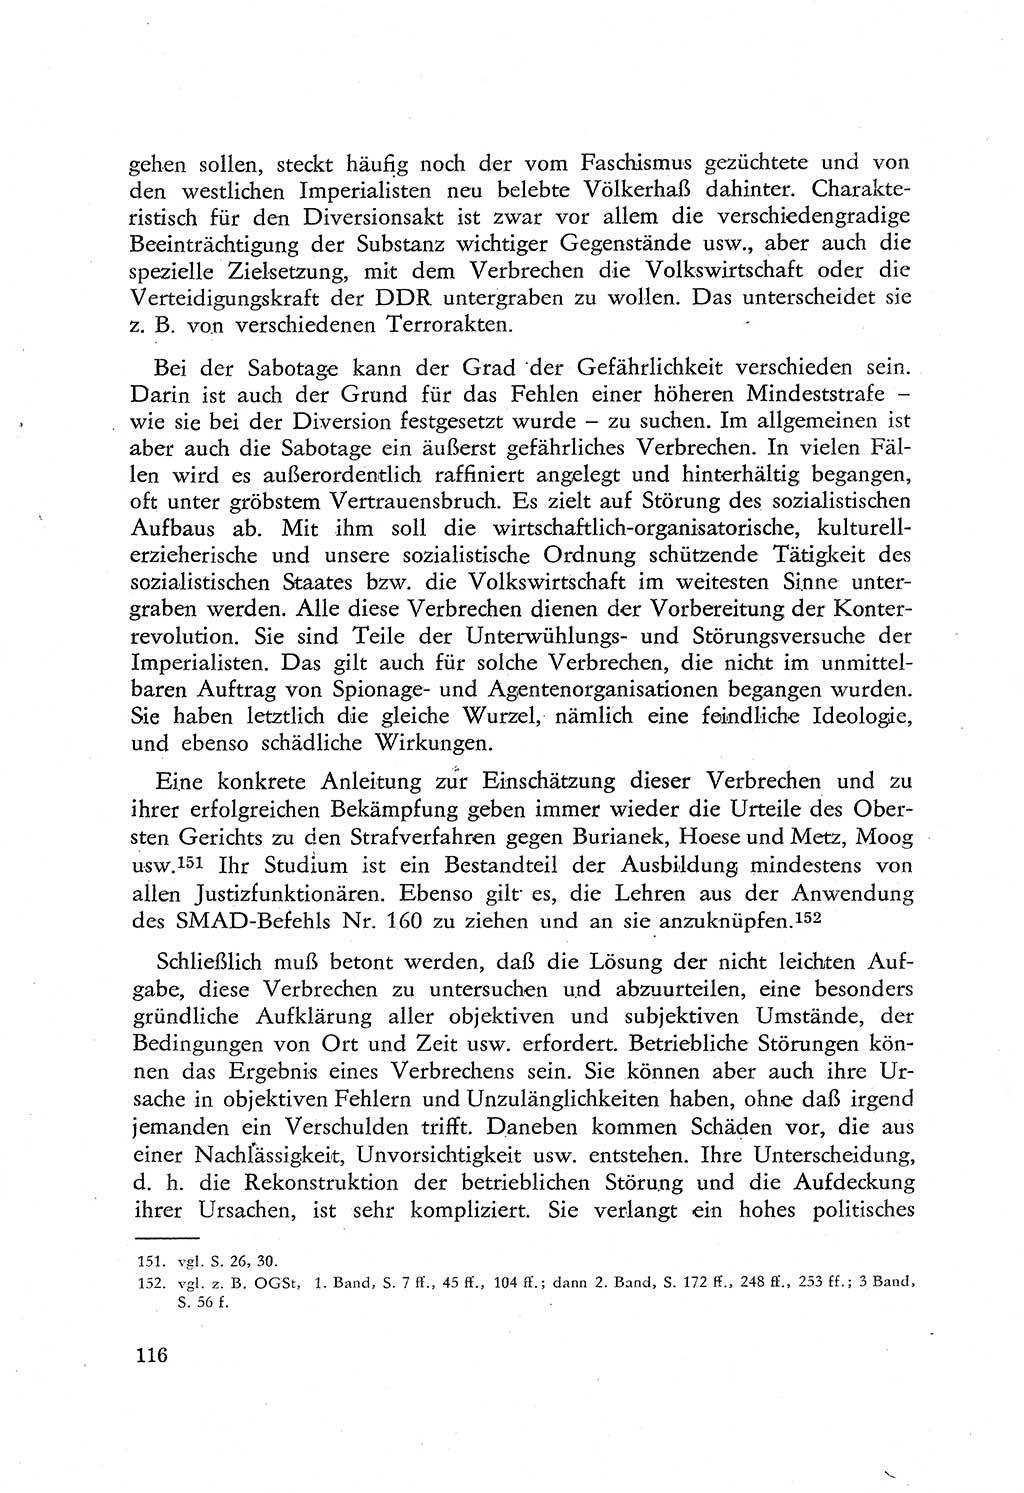 Beiträge zum Strafrecht [Deutsche Demokratische Republik (DDR)], Staatsverbrechen 1959, Seite 116 (Beitr. Strafr. DDR St.-Verbr. 1959, S. 116)